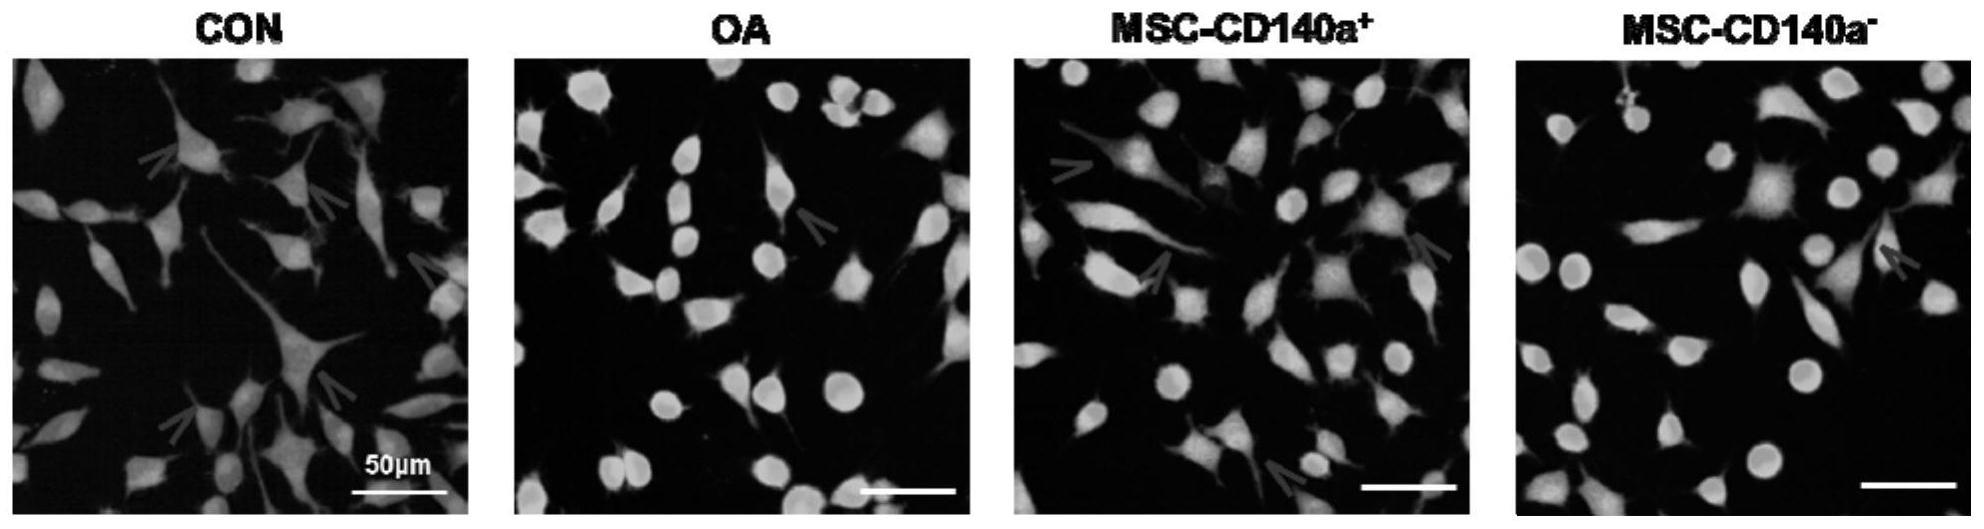 CD140a+间充质干细胞亚群在治疗神经损伤中的用途